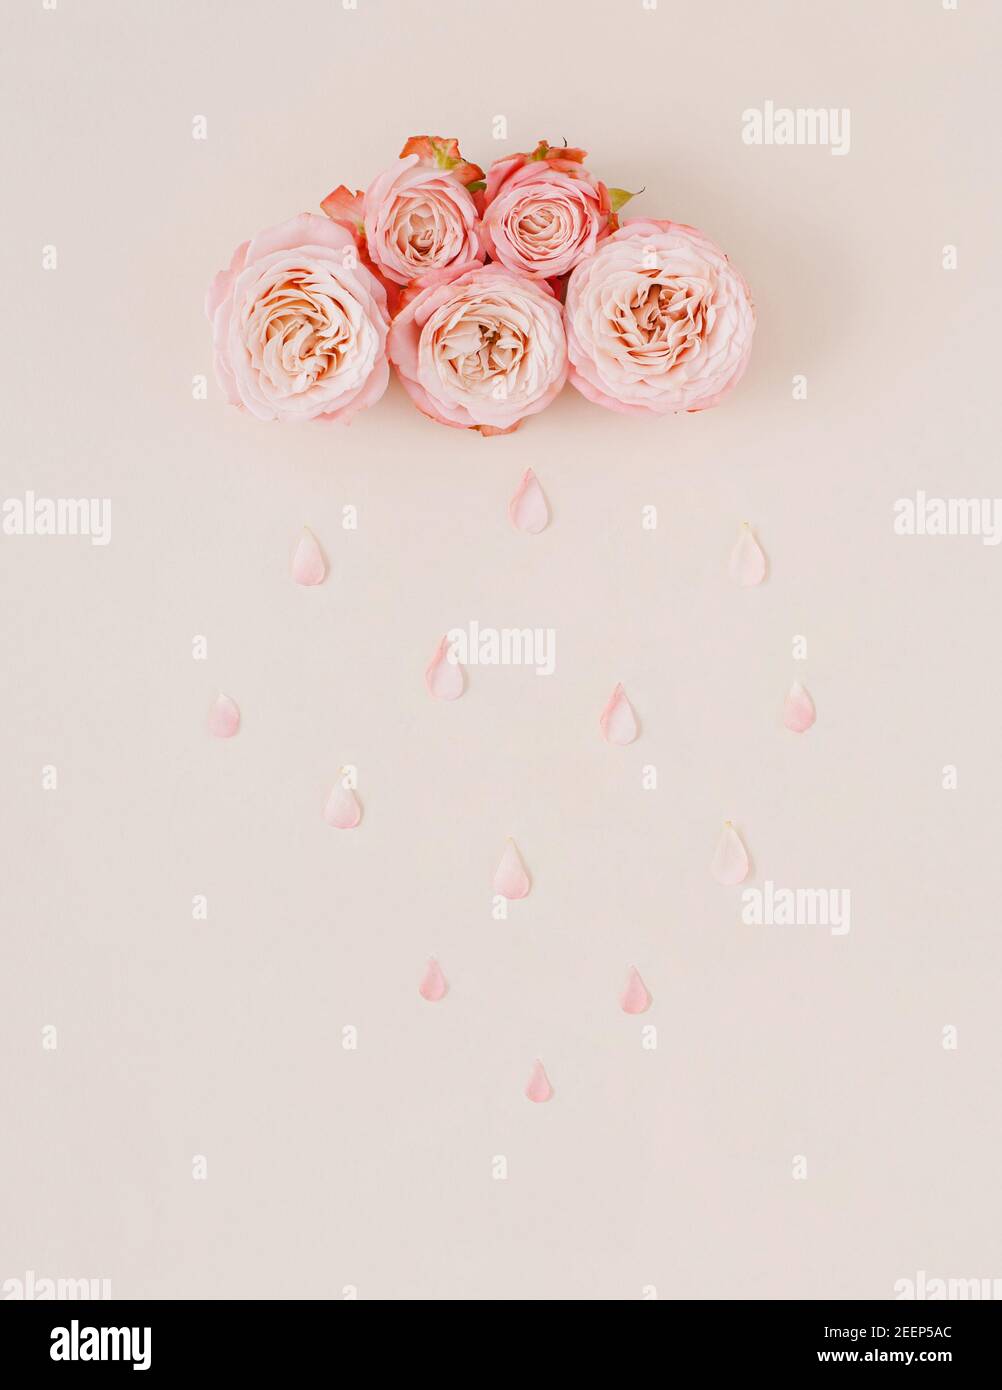 Weiße und rosa Pastellwolke und Regen mit Rosenblüten und Blütenblättern. Natur oder Frauentag Konzept. Kreativer Hintergrund. Minimale Ästhetik. Stockfoto